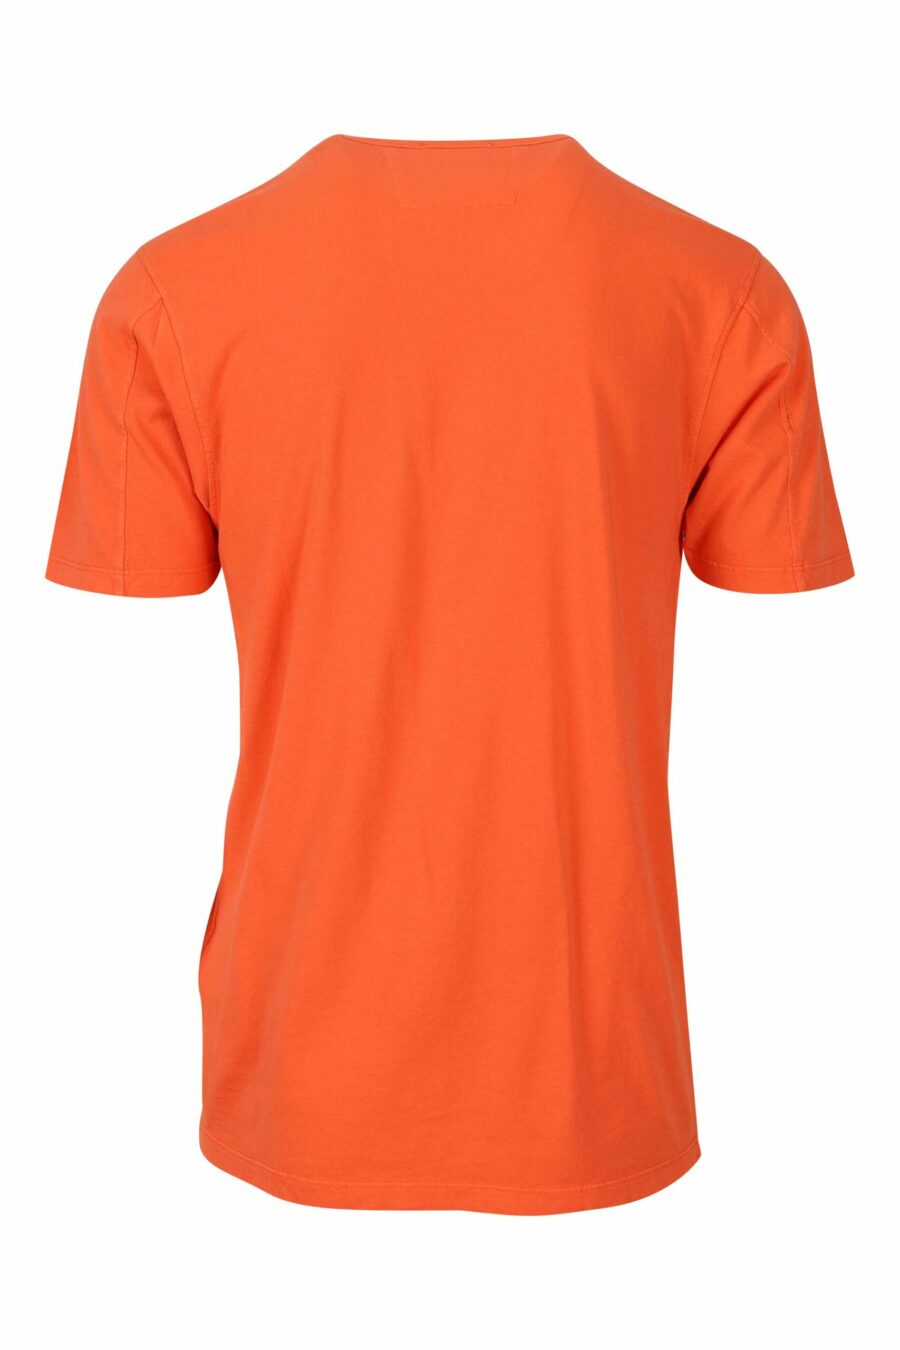 Orangefarbenes T-Shirt mit zentriertem Minilog - 7620943594928 1 1 skaliert